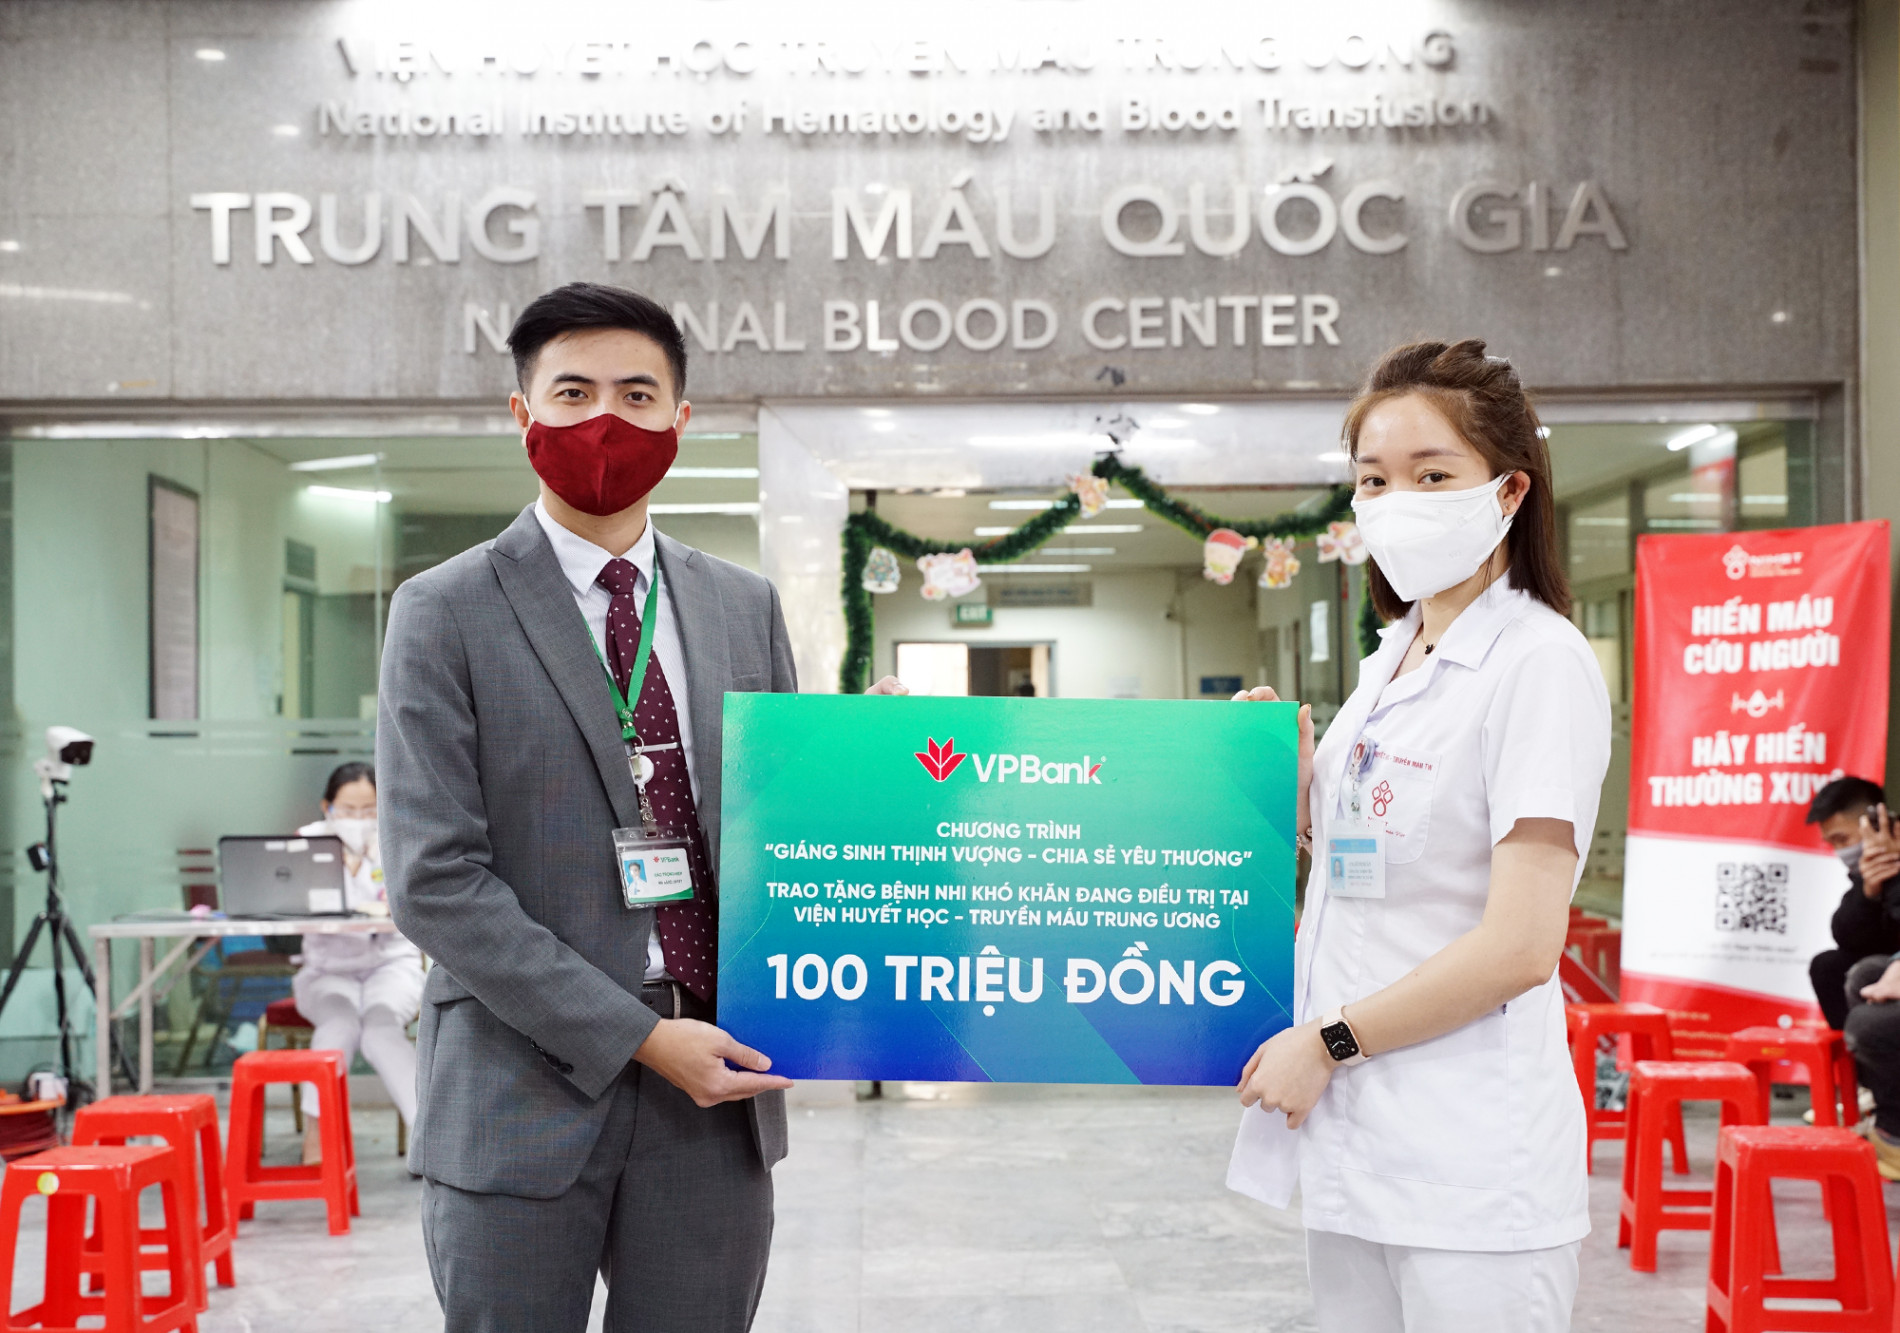 VPBank trao tặng 100 triệu đồng, hỗ trợ bệnh nhi khó khăn tại Viện Huyết học và Truyền máu TW - Ảnh 1.